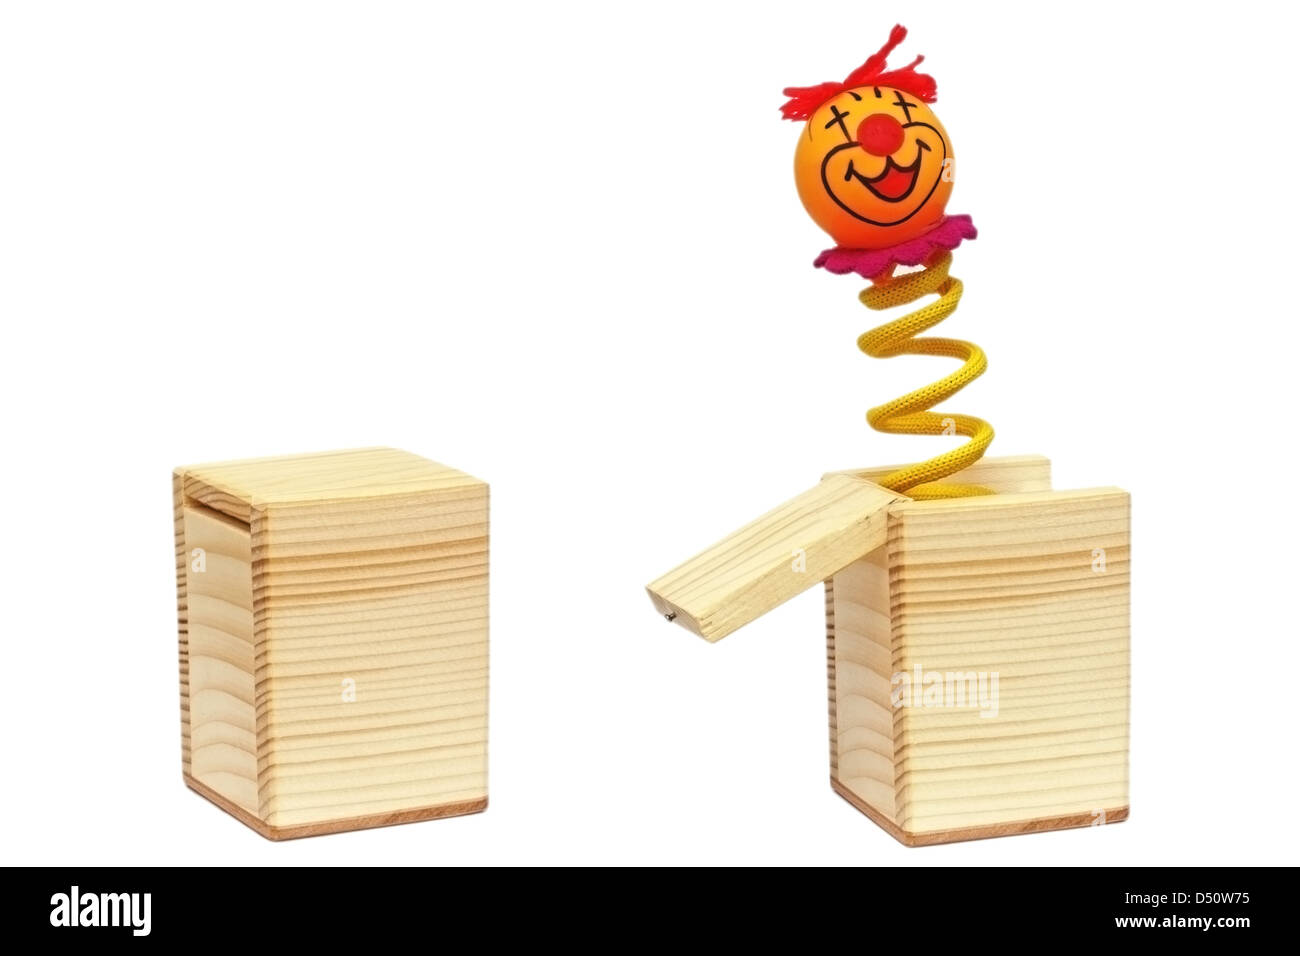 Tricky jouet avec clown sur le ressort qui sort d'une boîte en bois Banque D'Images